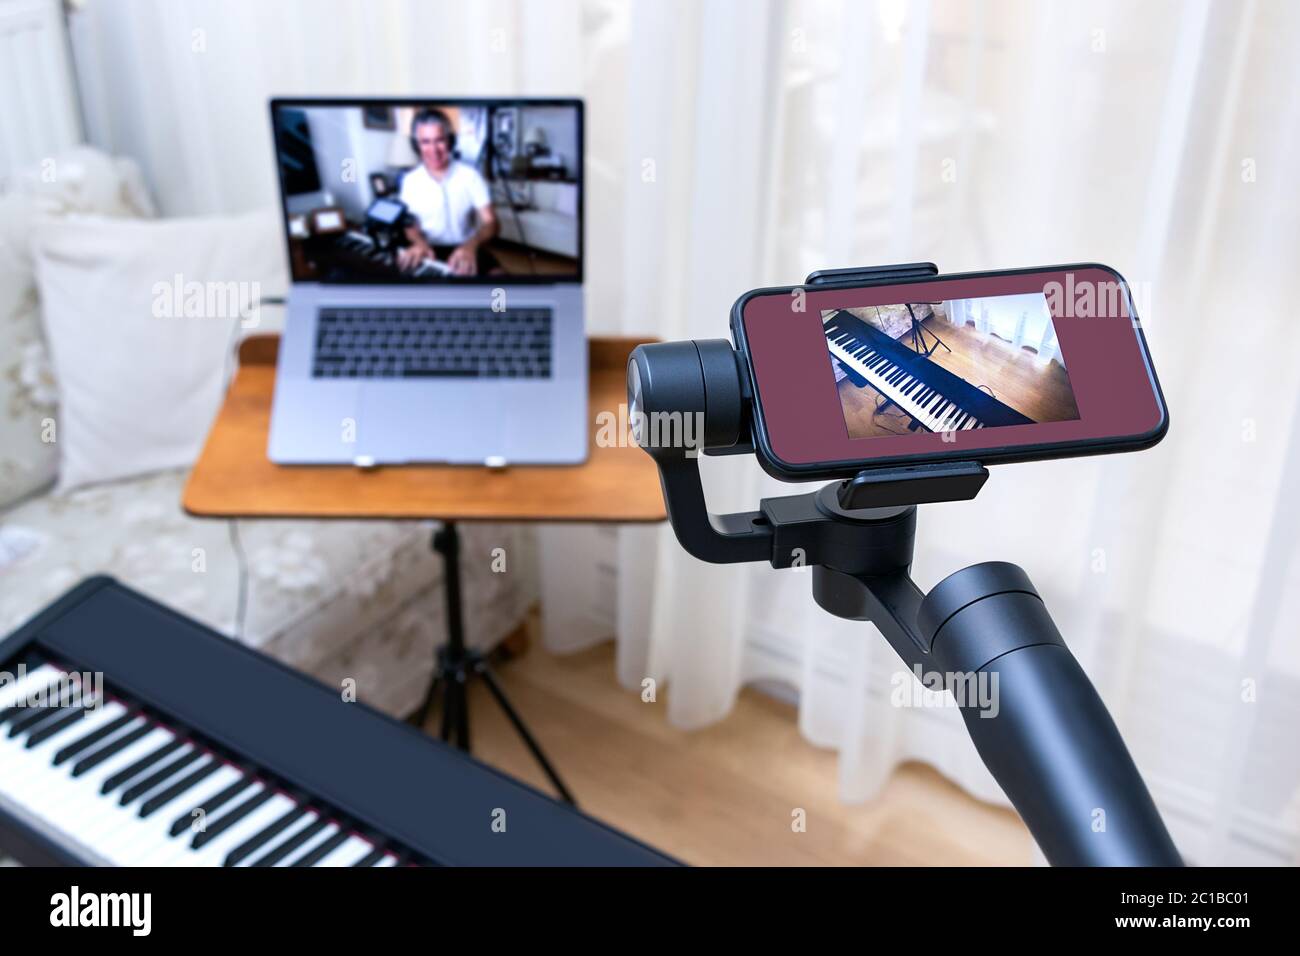 Un smartphone placé sur une nacelle utilisée comme deuxième caméra pour les cours de piano en ligne. Banque D'Images